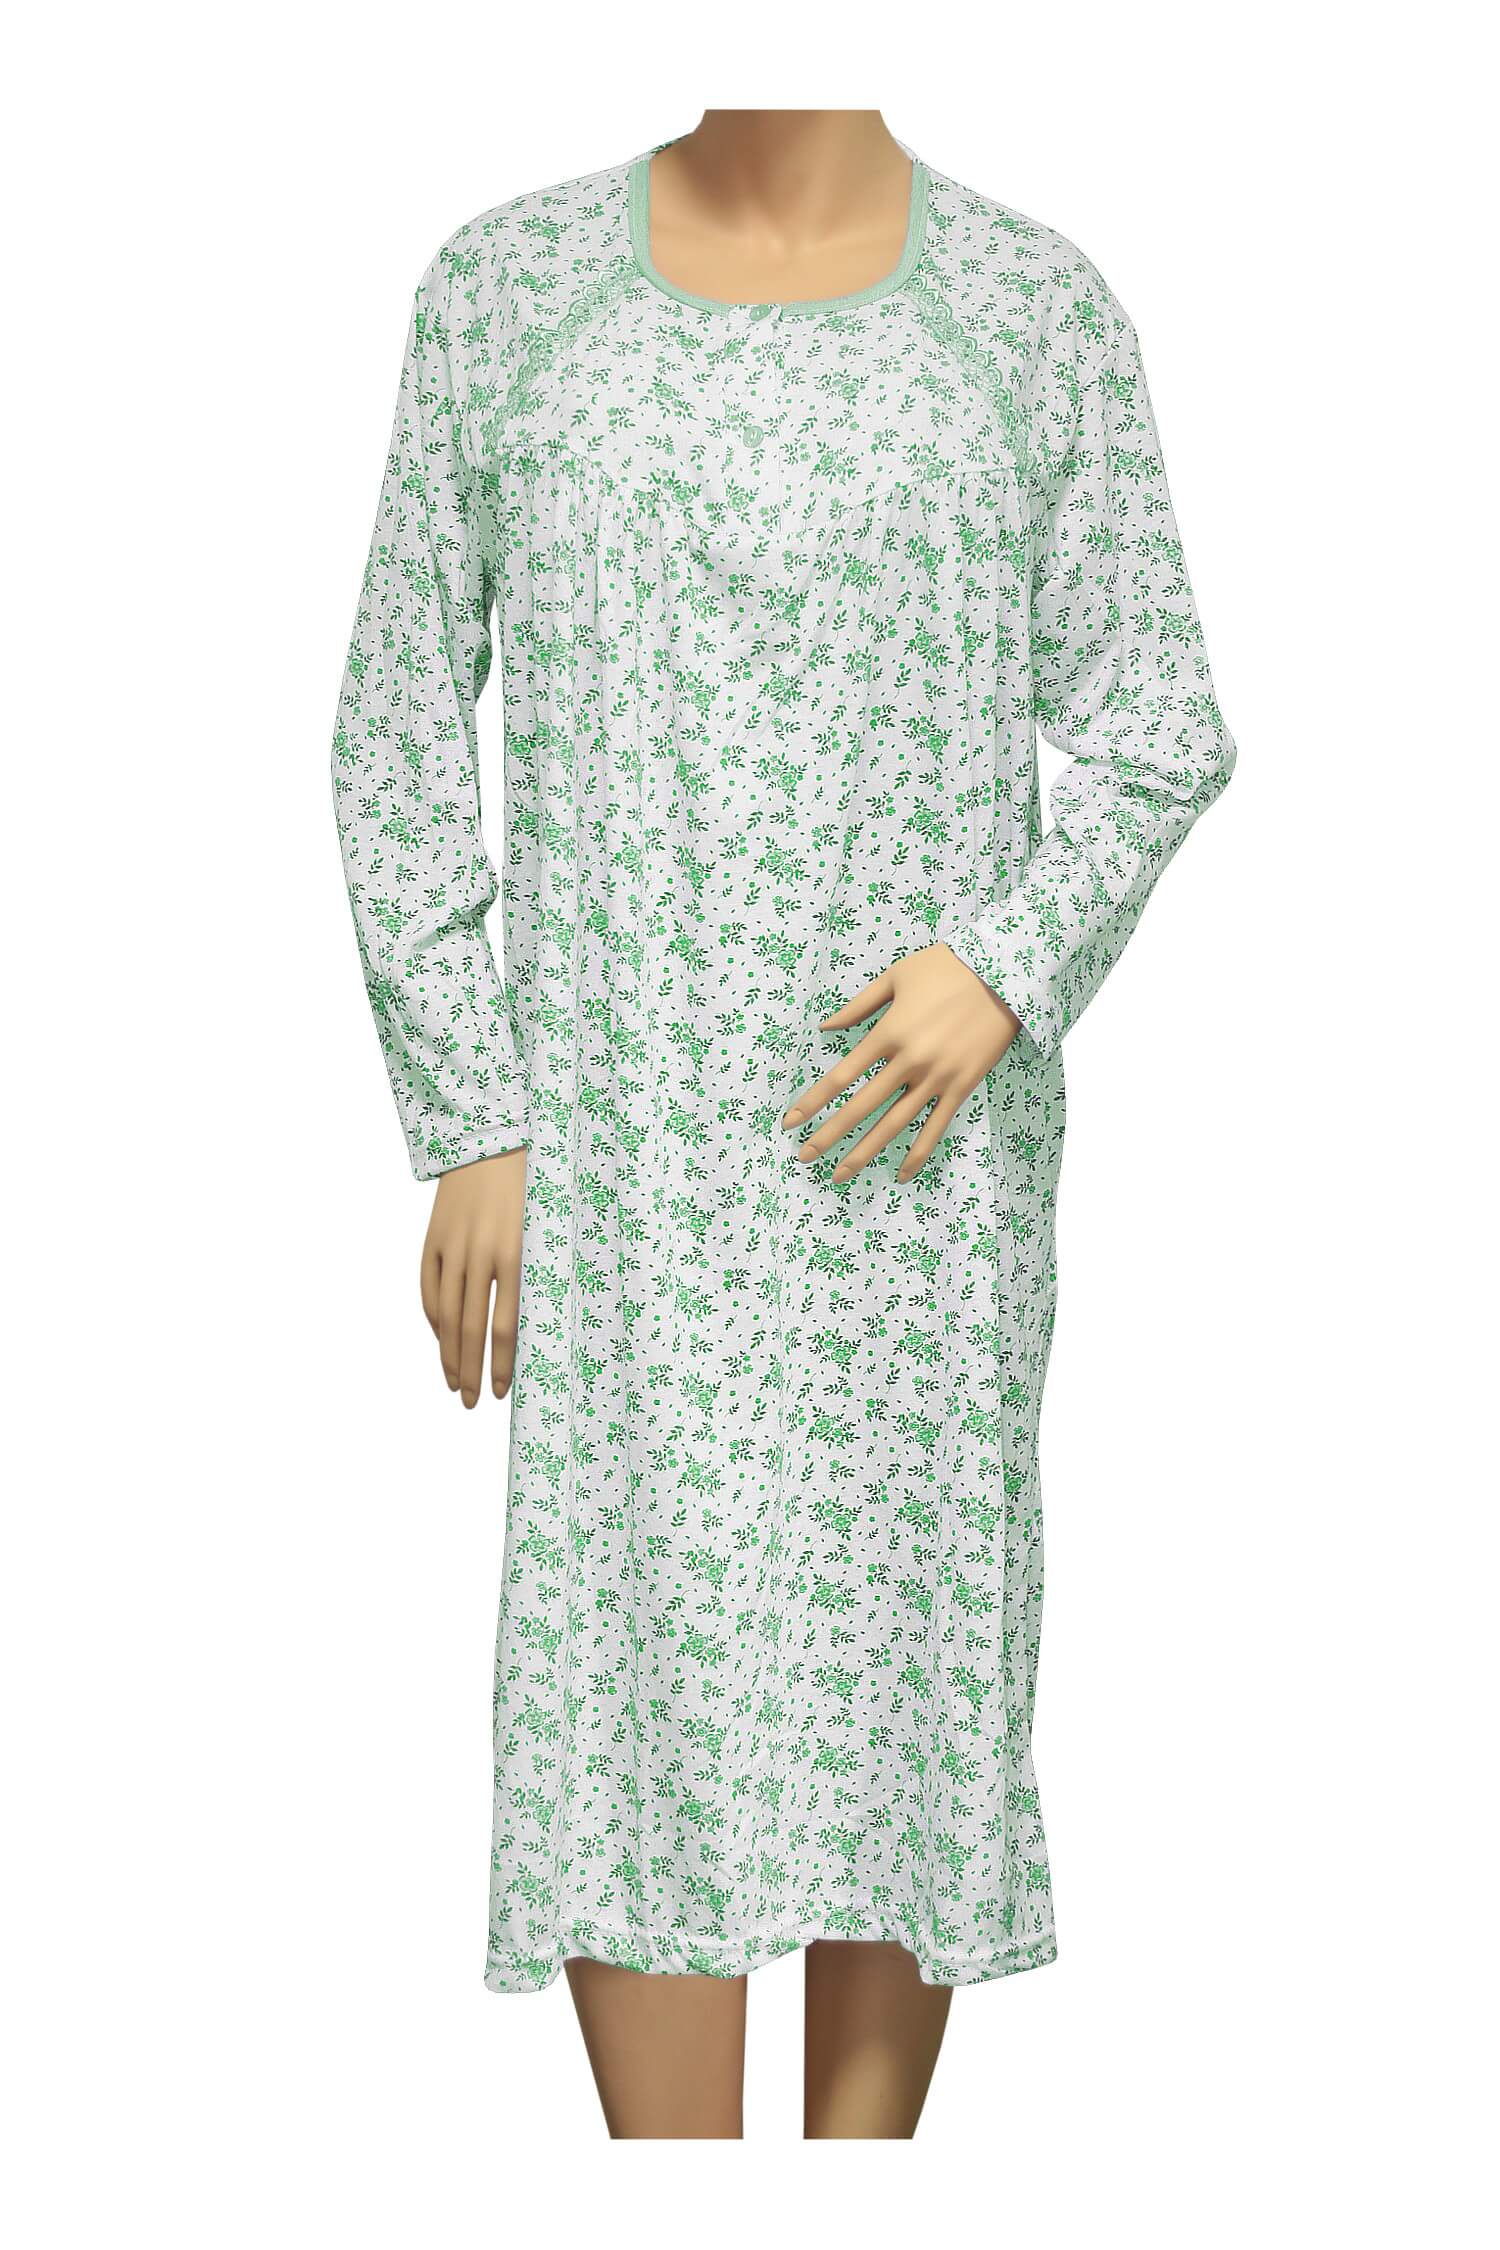 Karina dámská noční košile 1008 M zelená